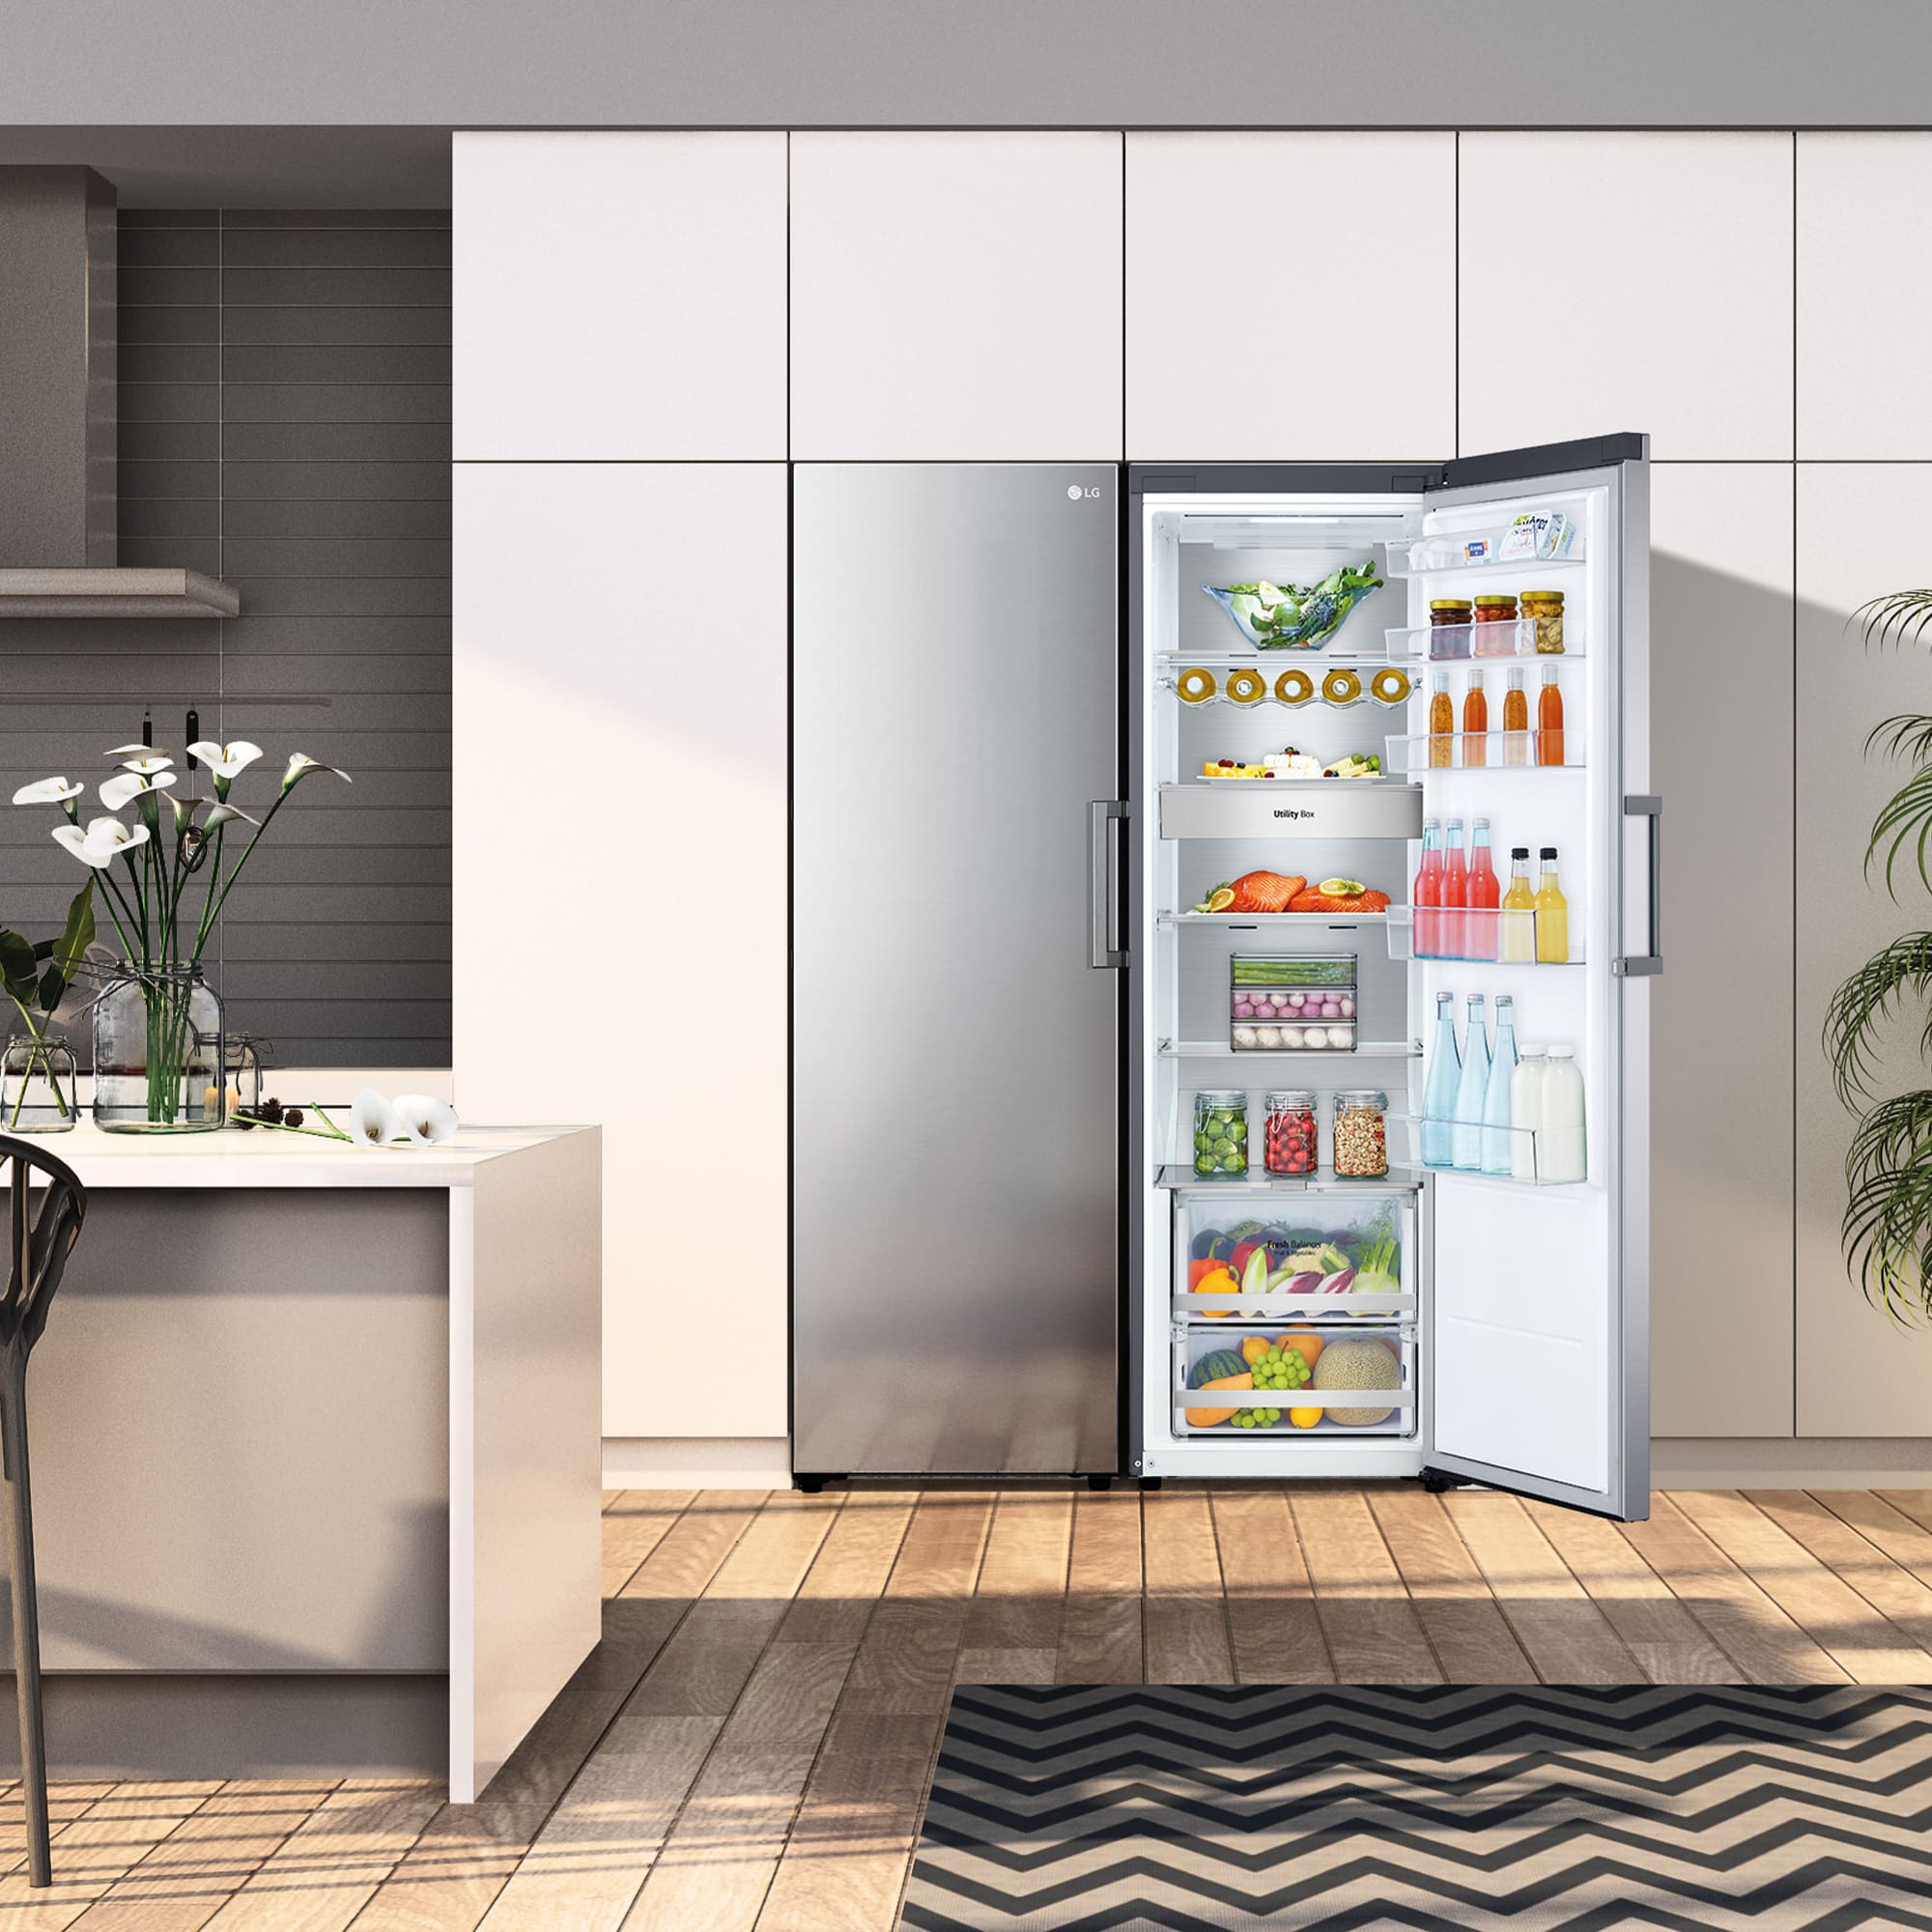 La elegancia en tu cocina: frigorífico con puerta de cristal 